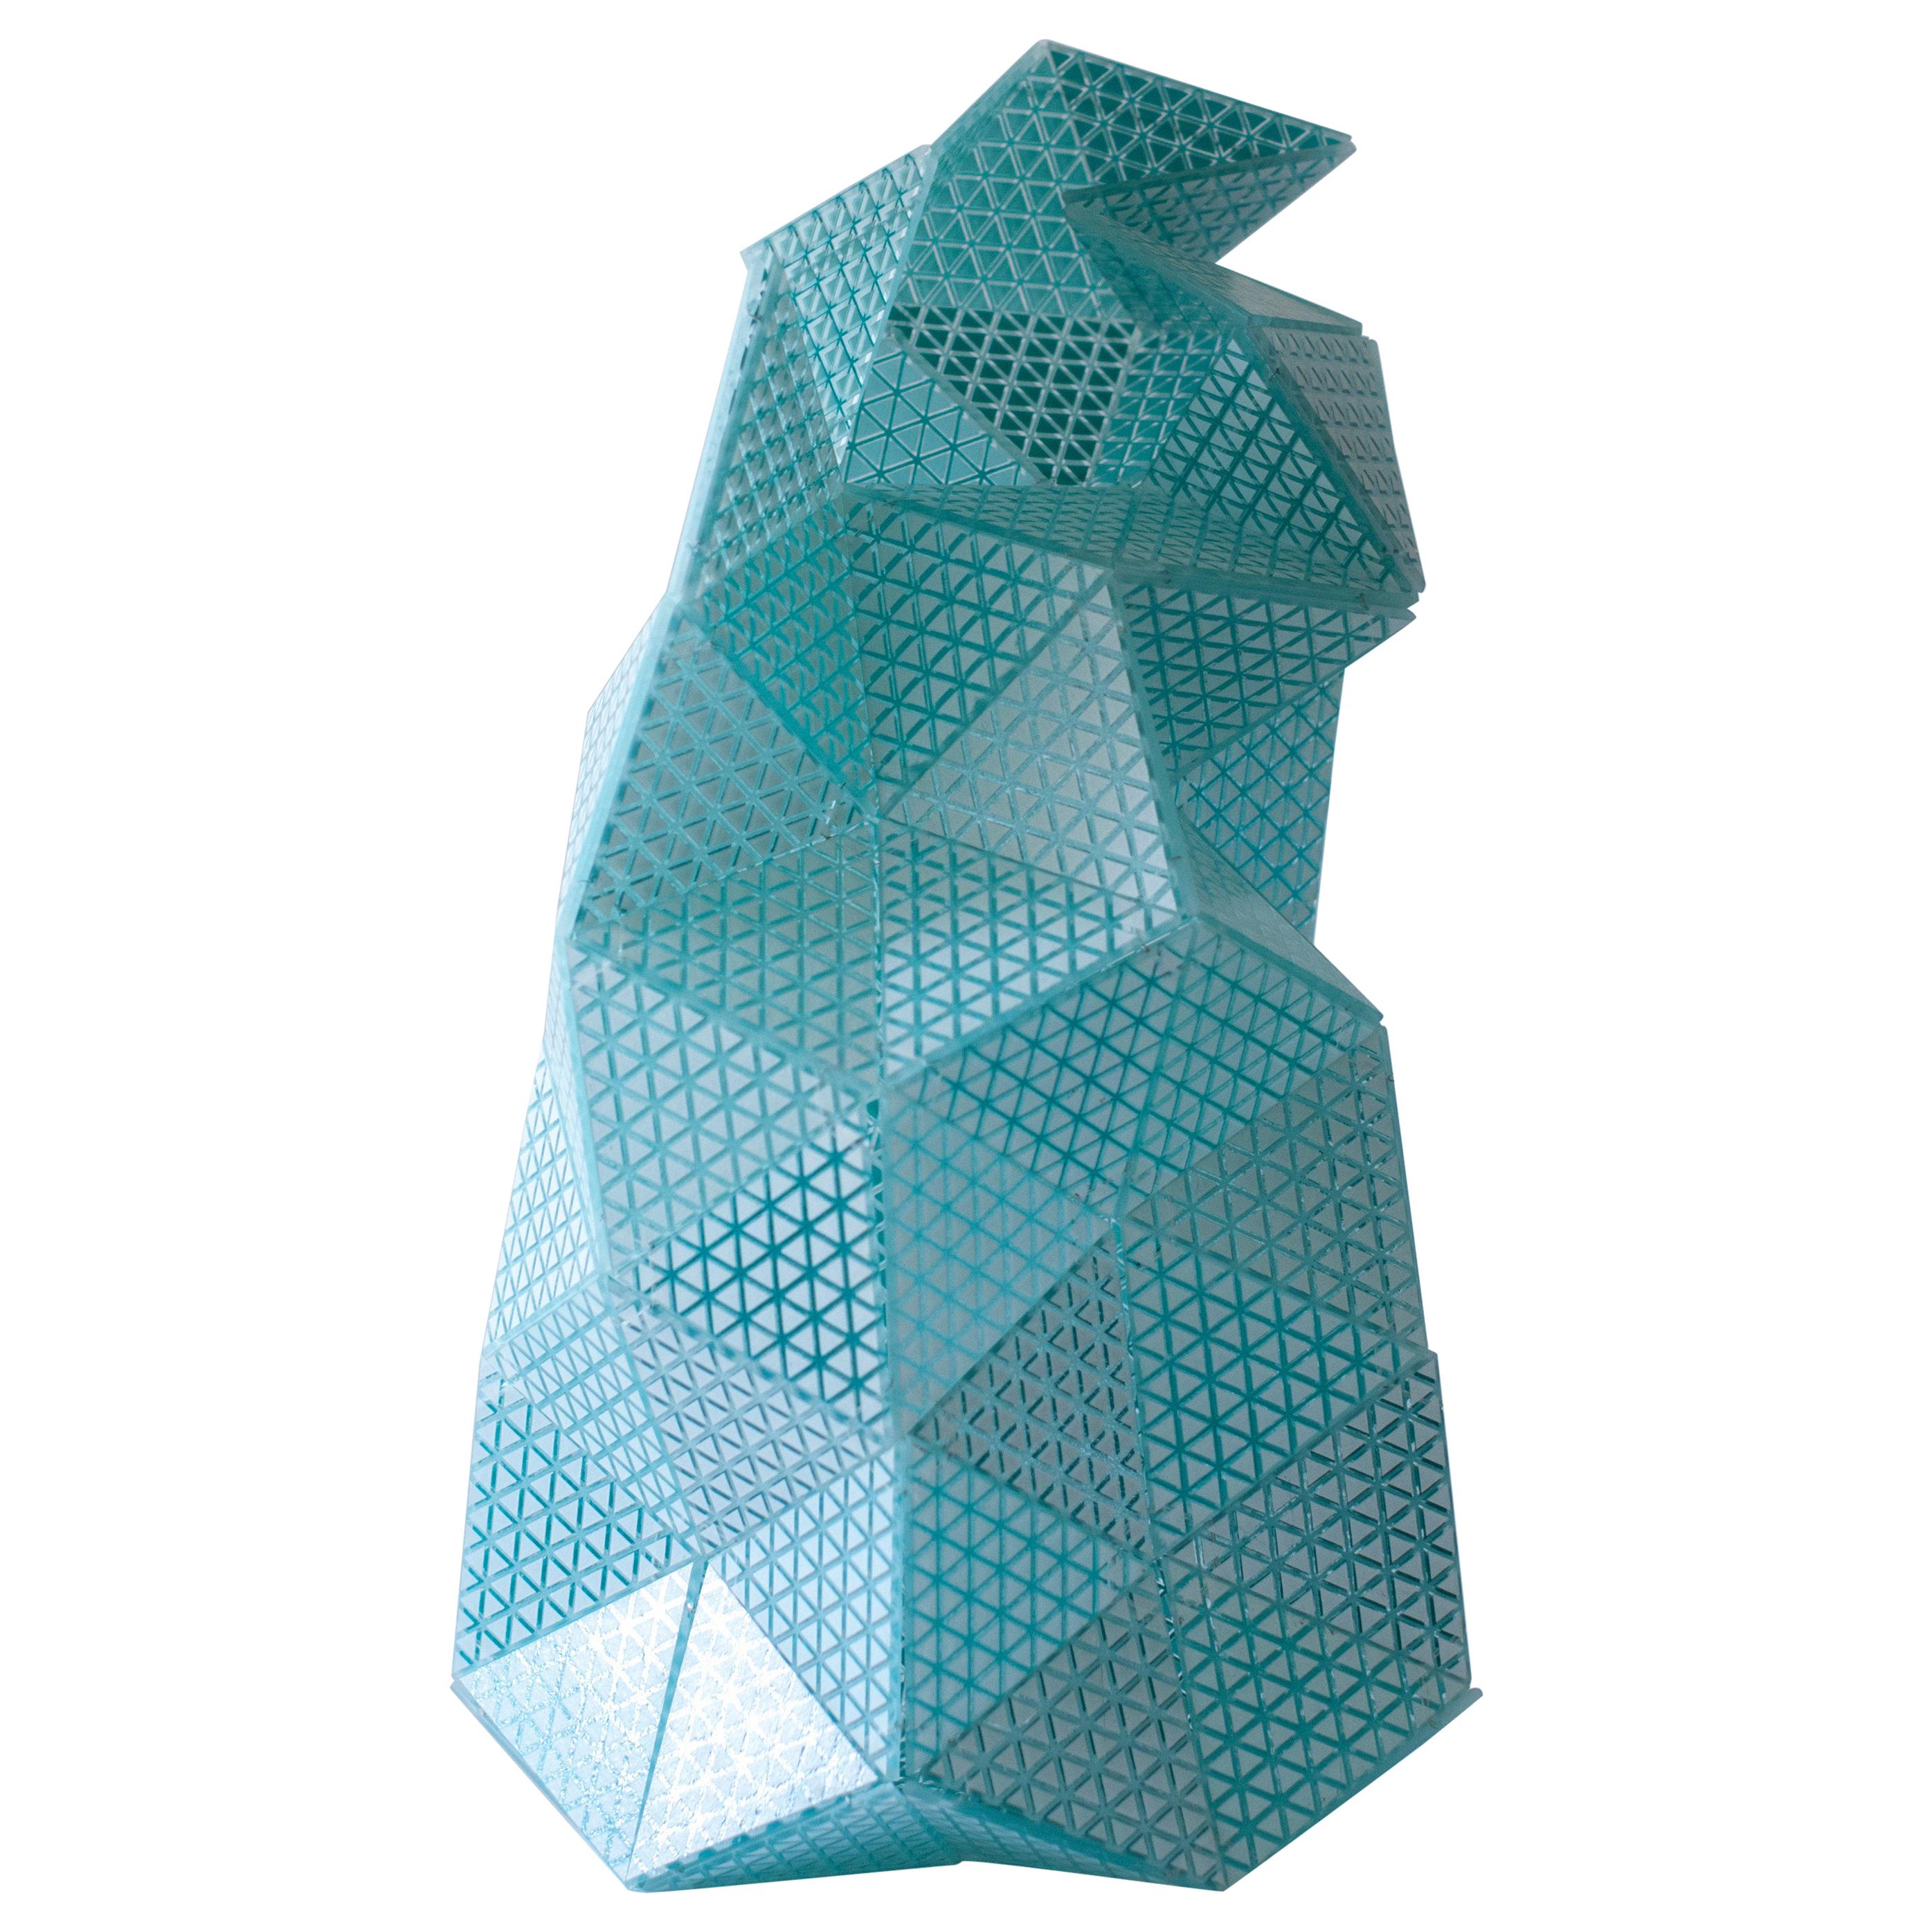 Touch-Me 1.0, handgefertigte Vase aus Muranoglas von Matteo Silverio